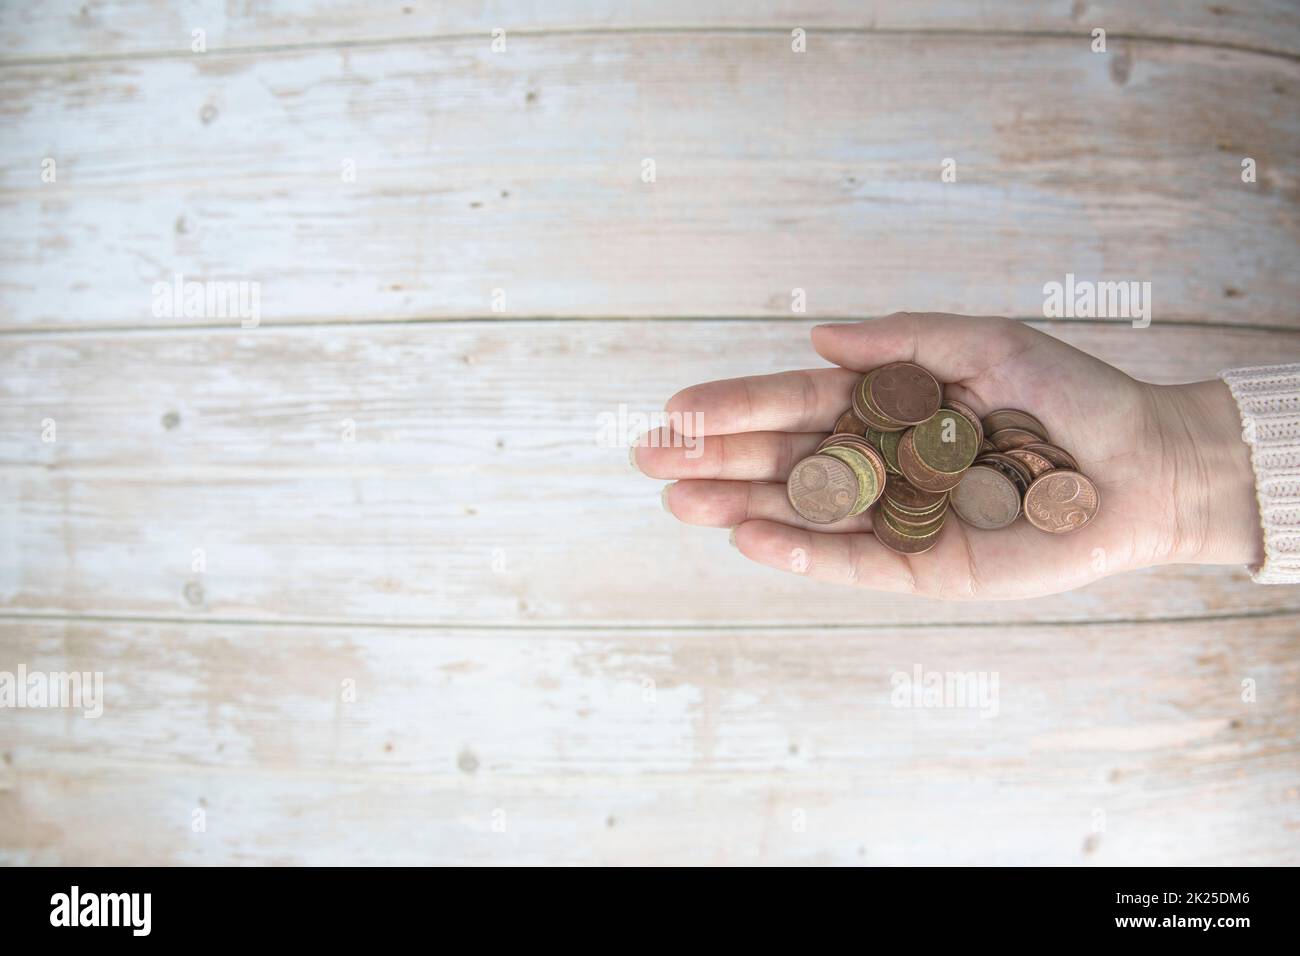 Hände, die einen Haufen Euro-Münzen in der Hand halten, auf Holzhintergrund. Spenden, Sparen, Spendenaktionen, Familienfinanzplan, Finanzkrisenkonzept. Draufsicht. Speicherplatz kopieren Stockfoto